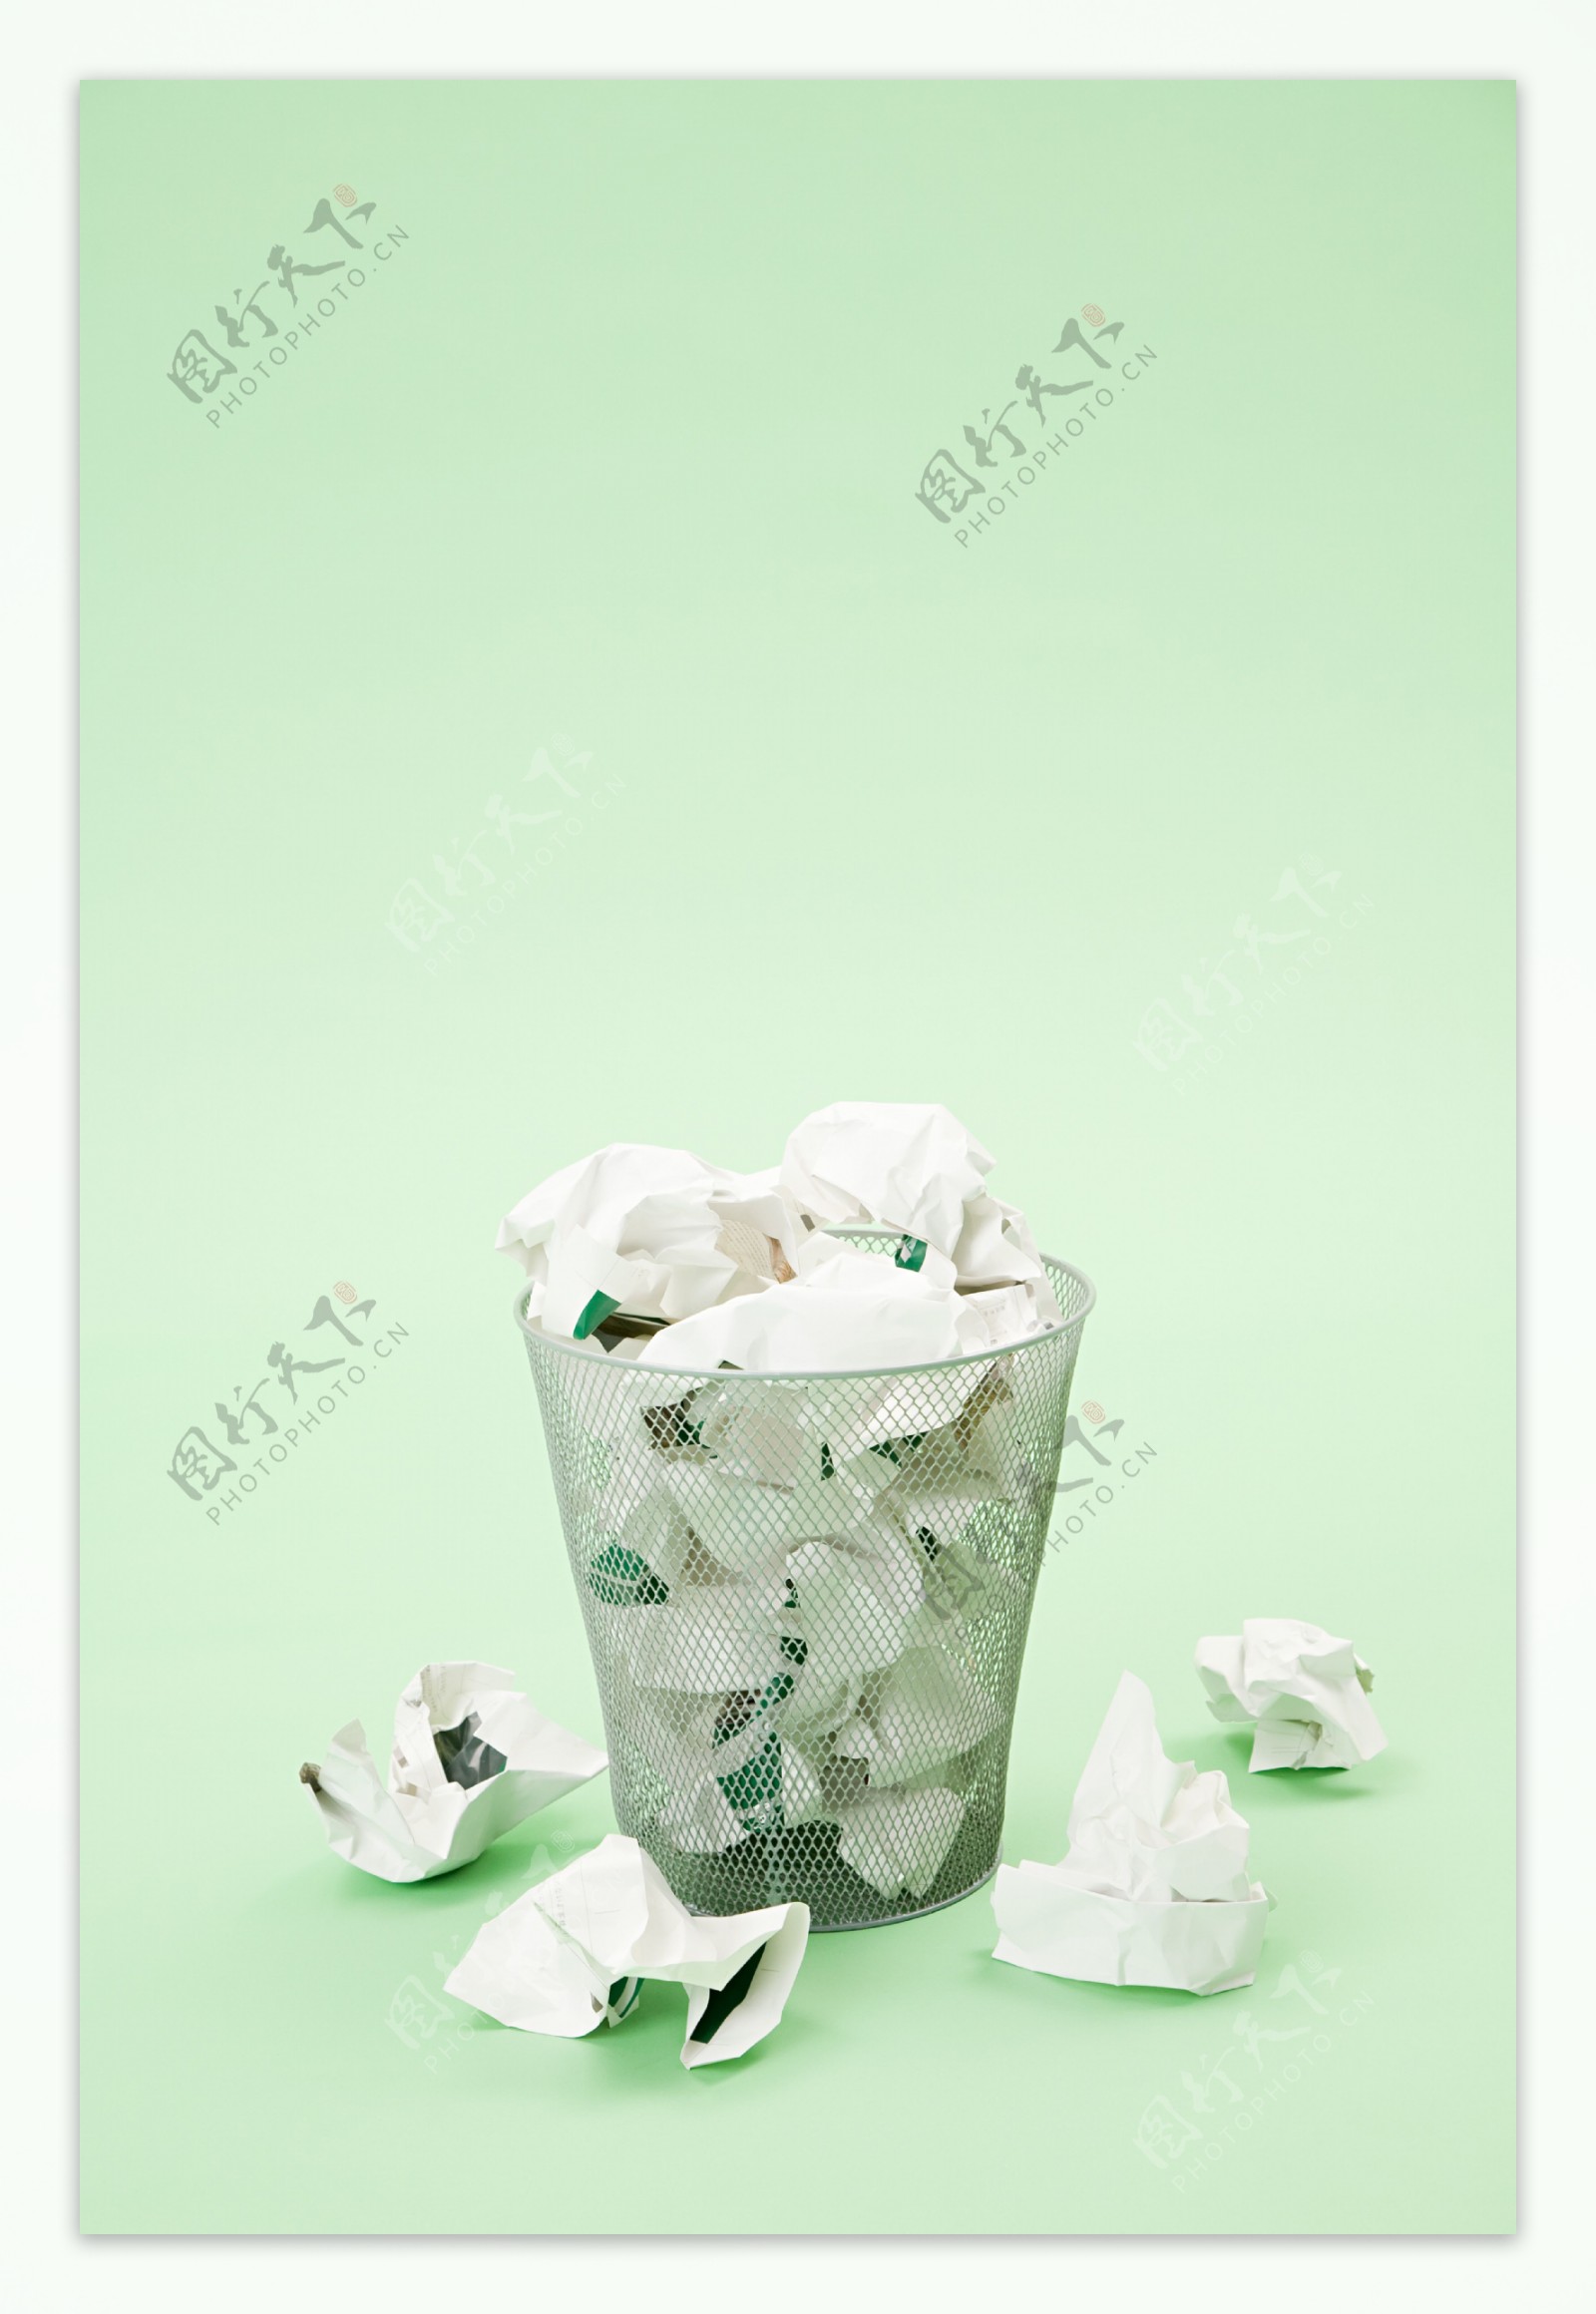 装满纸条的垃圾筐和散落的纸条图片图片